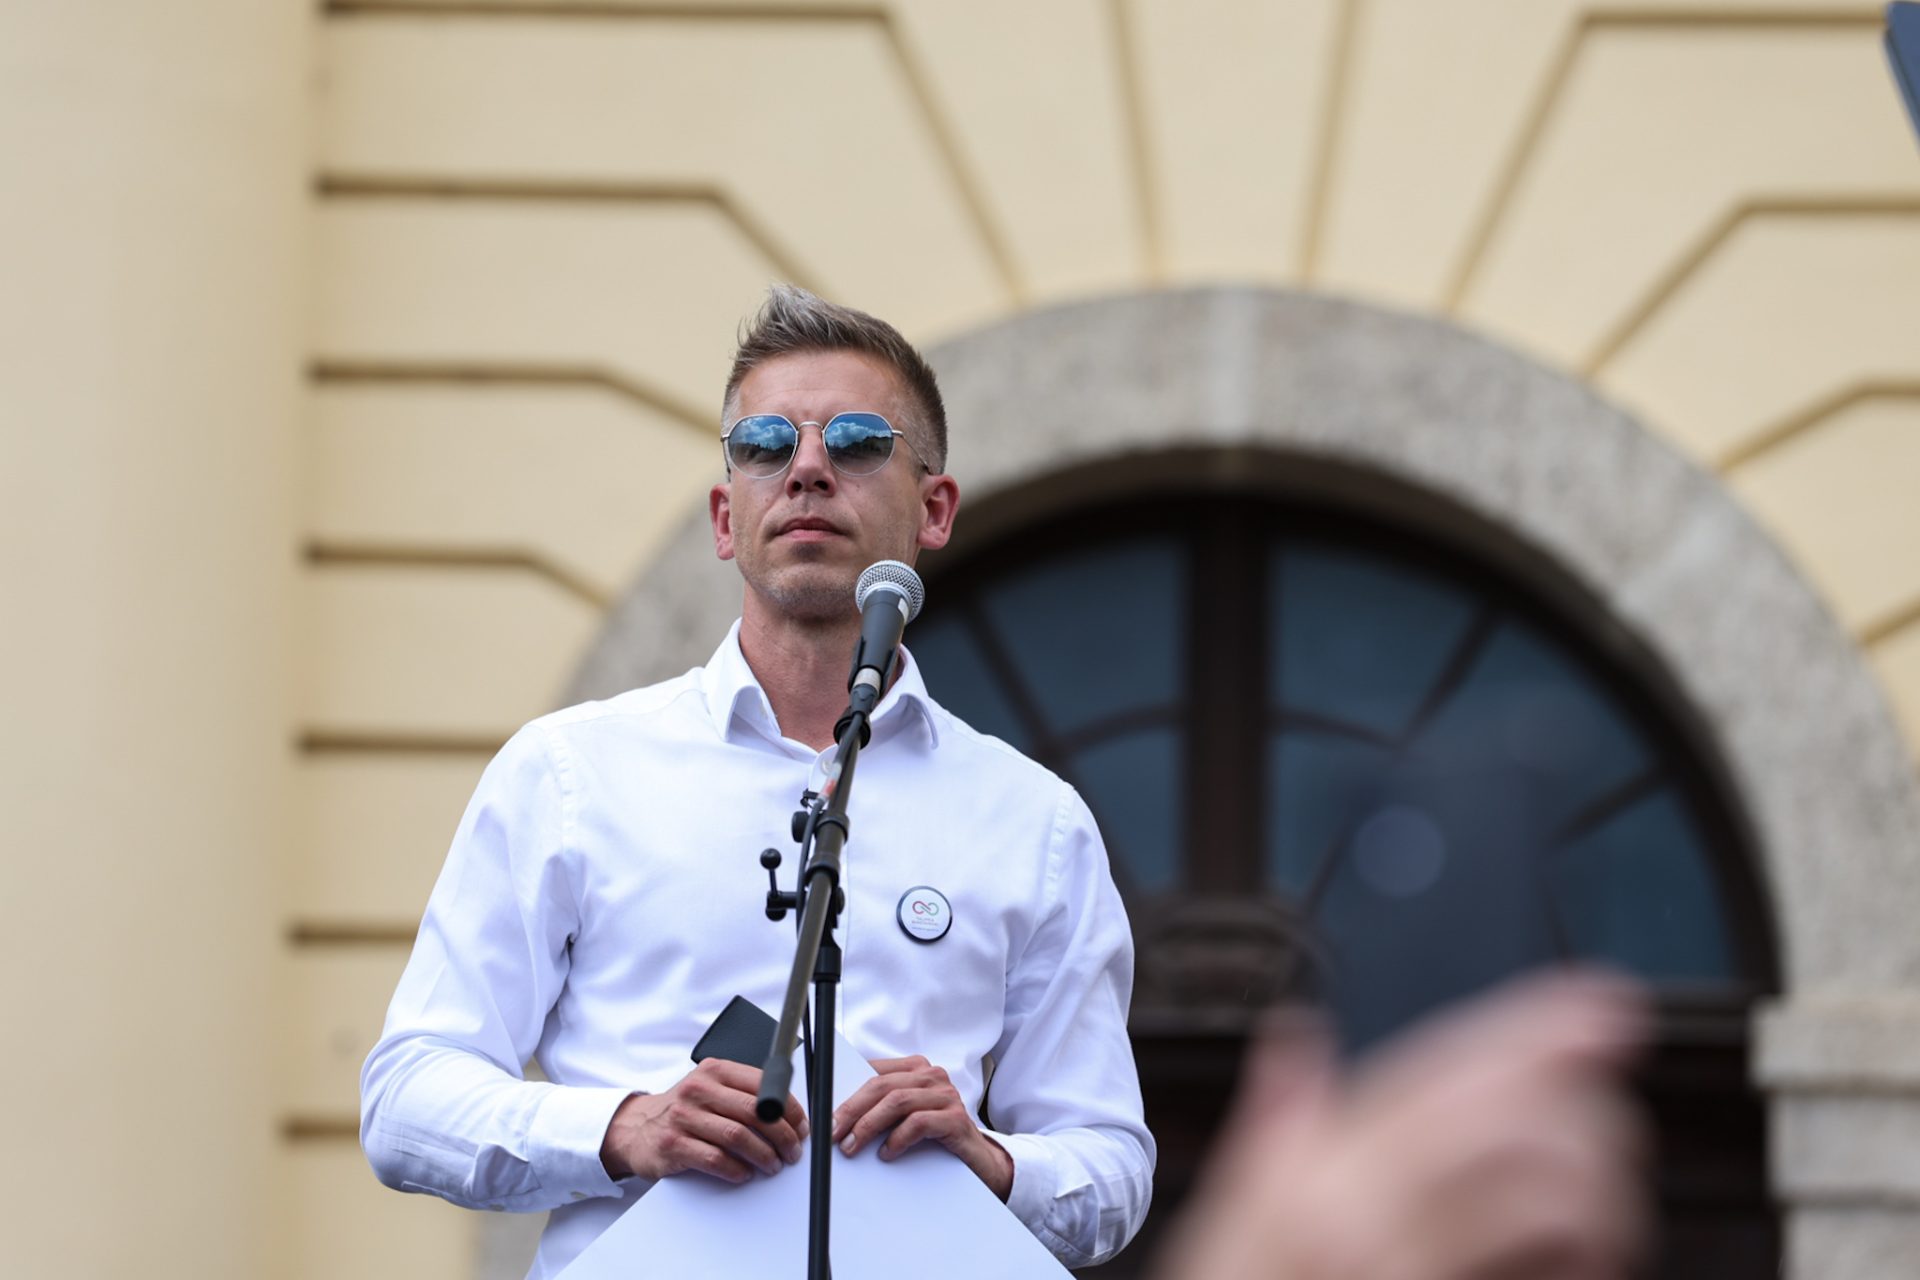 Az ellenzéki politikus, Magyar Péter keményen kritizálja a Fideszt: ‘Le kell fejezni azokat, akik nem értenek velük egyet?’ – Botrányos kijelentés a politikában